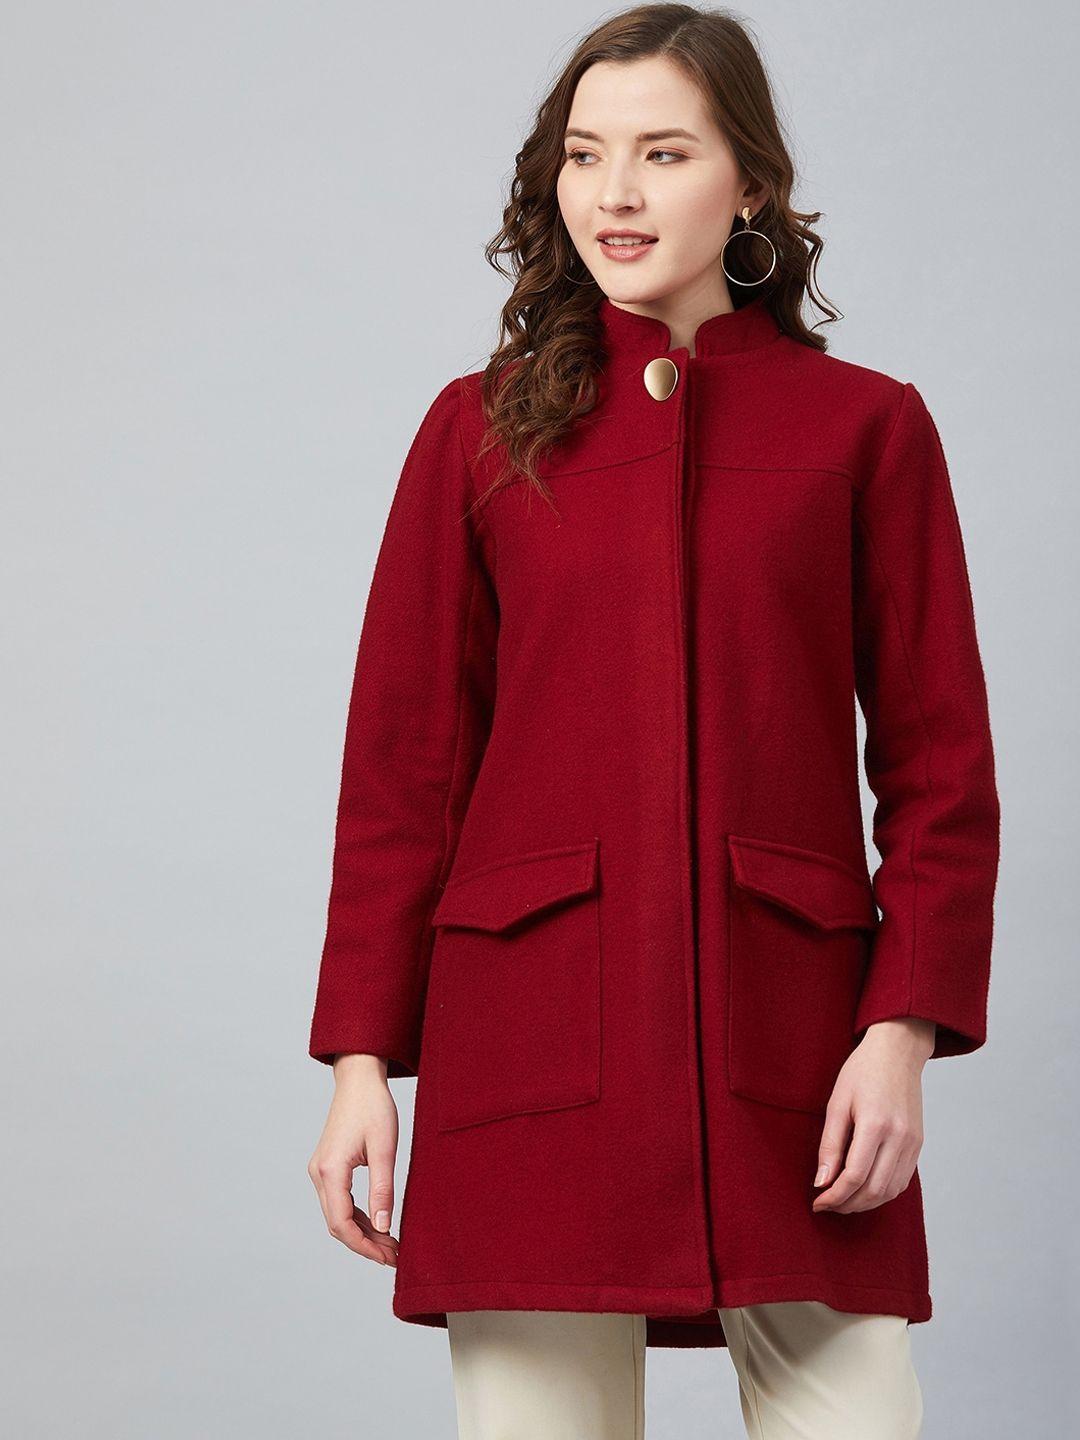 carlton london women maroon solid overcoat